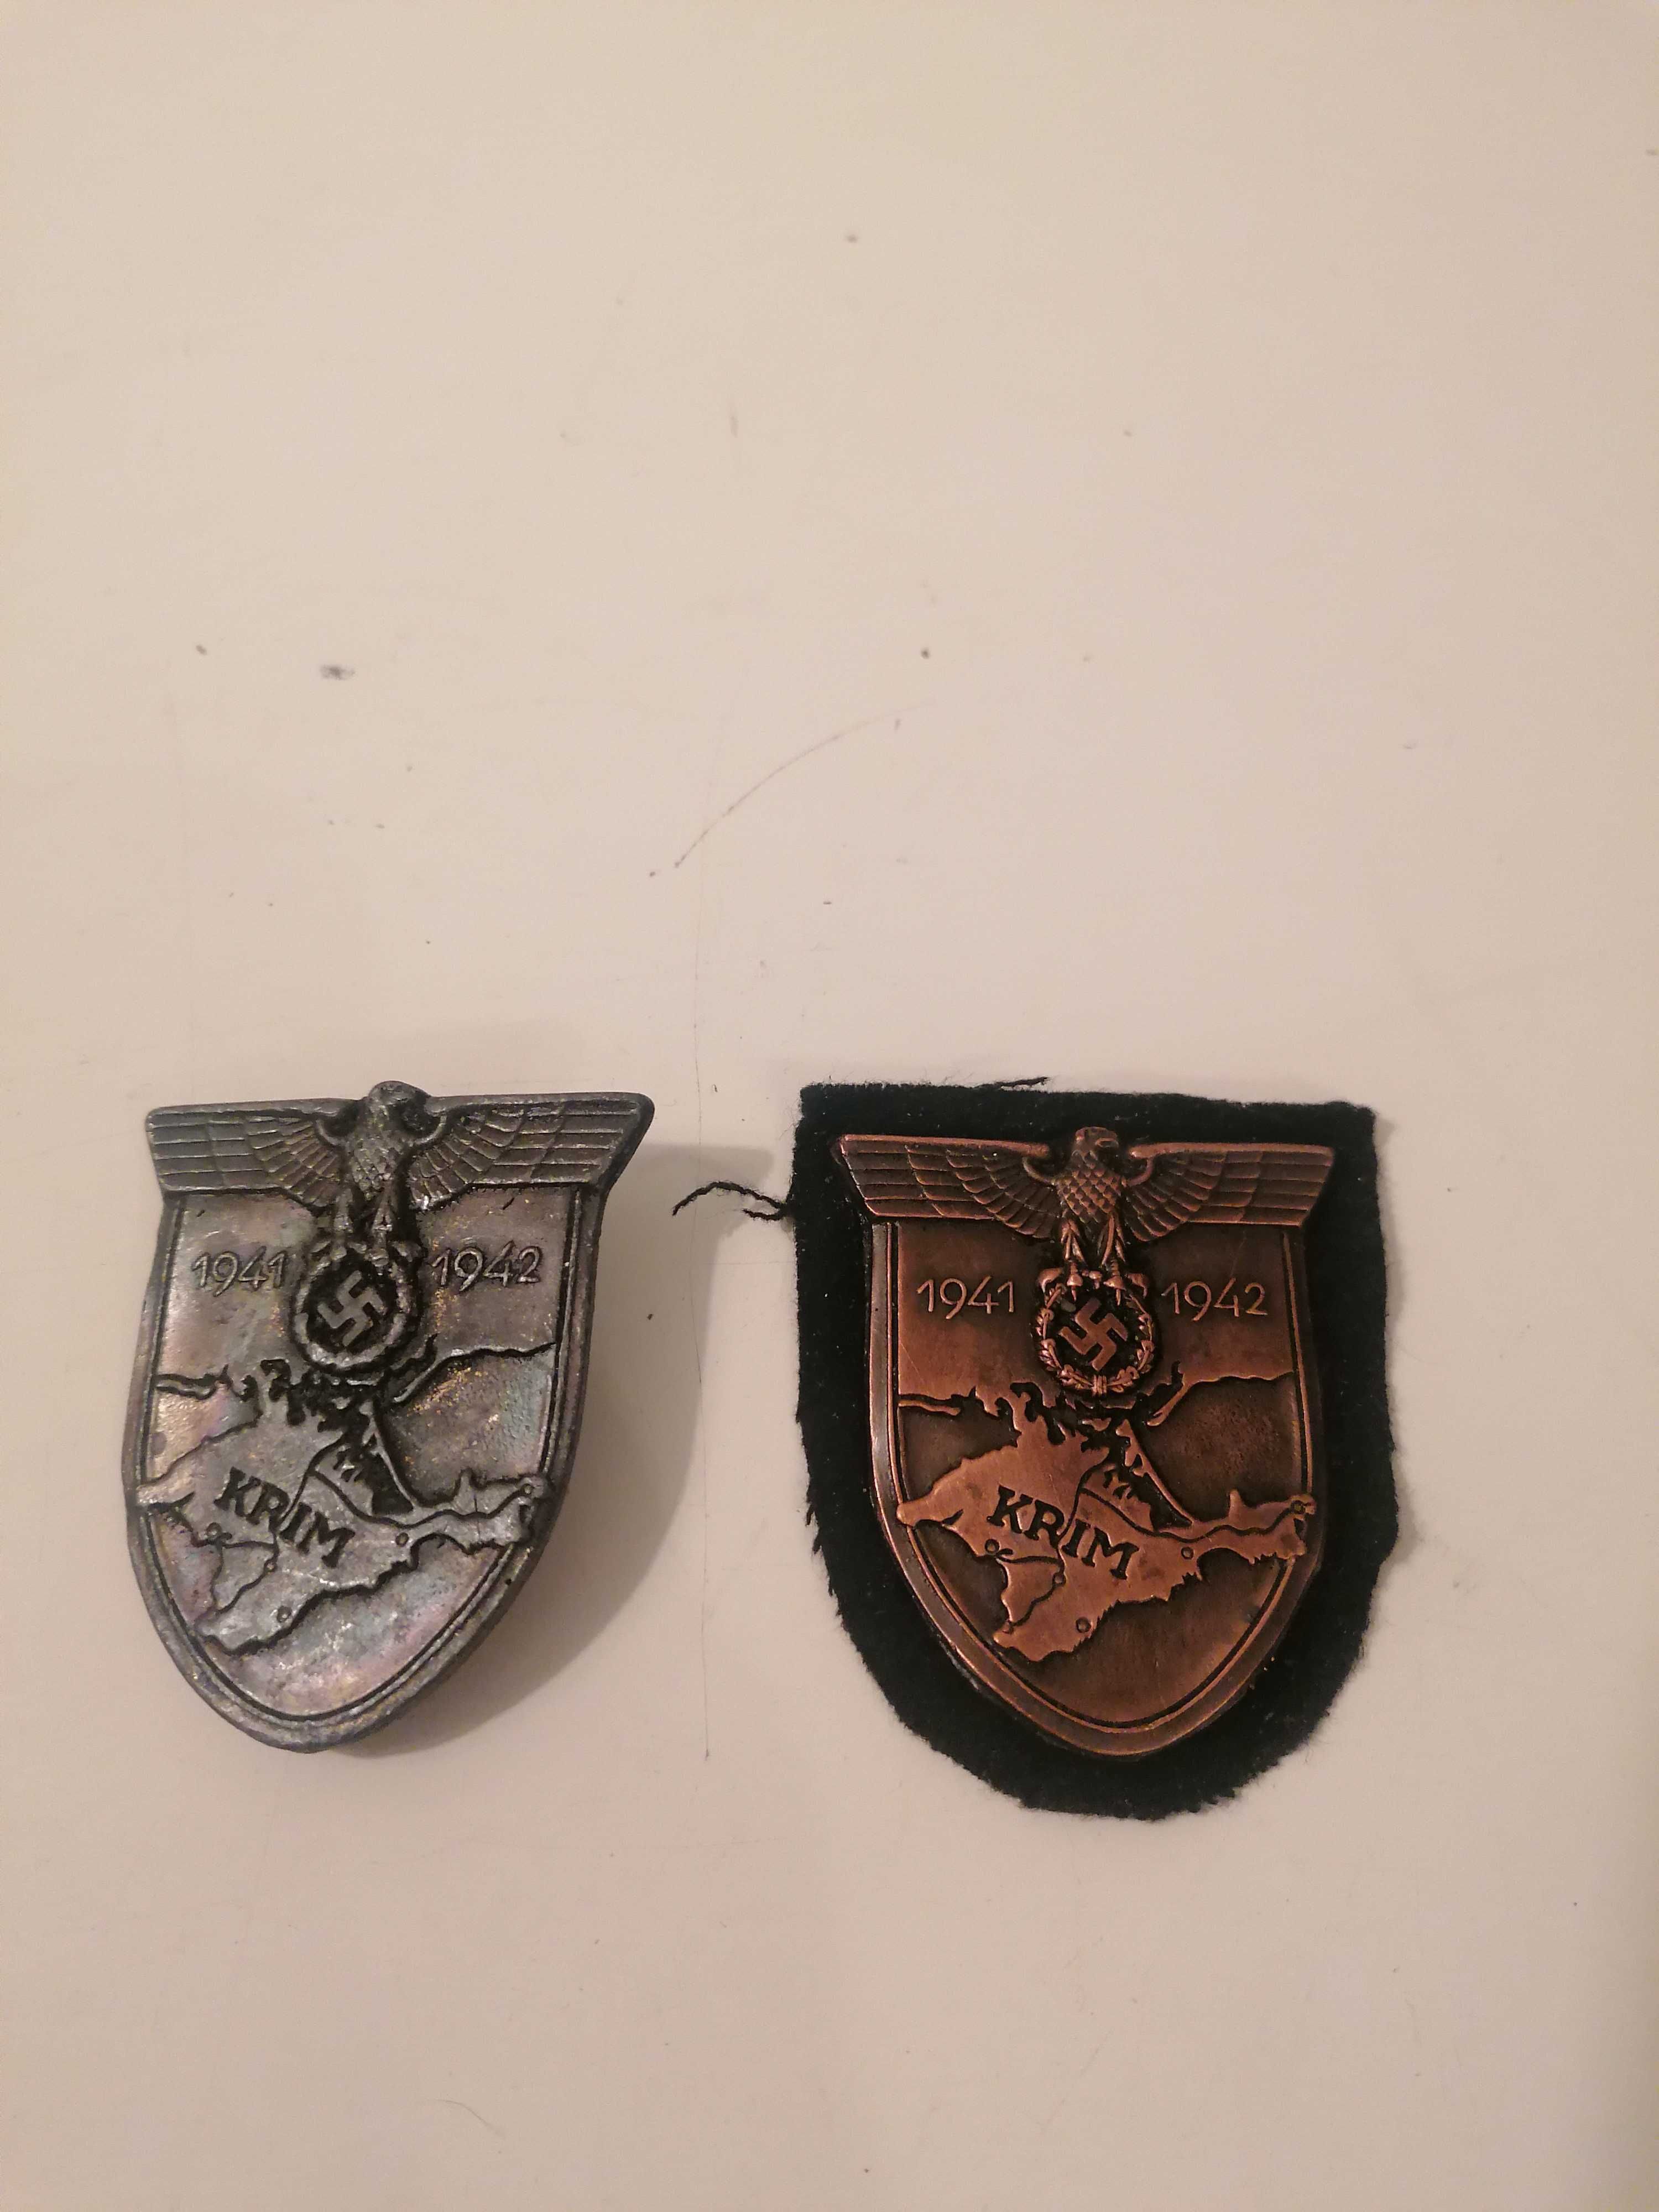 Rzadkość. Miedziany wojskowy emblemat z Kampanii Krymskiej 1941-42r